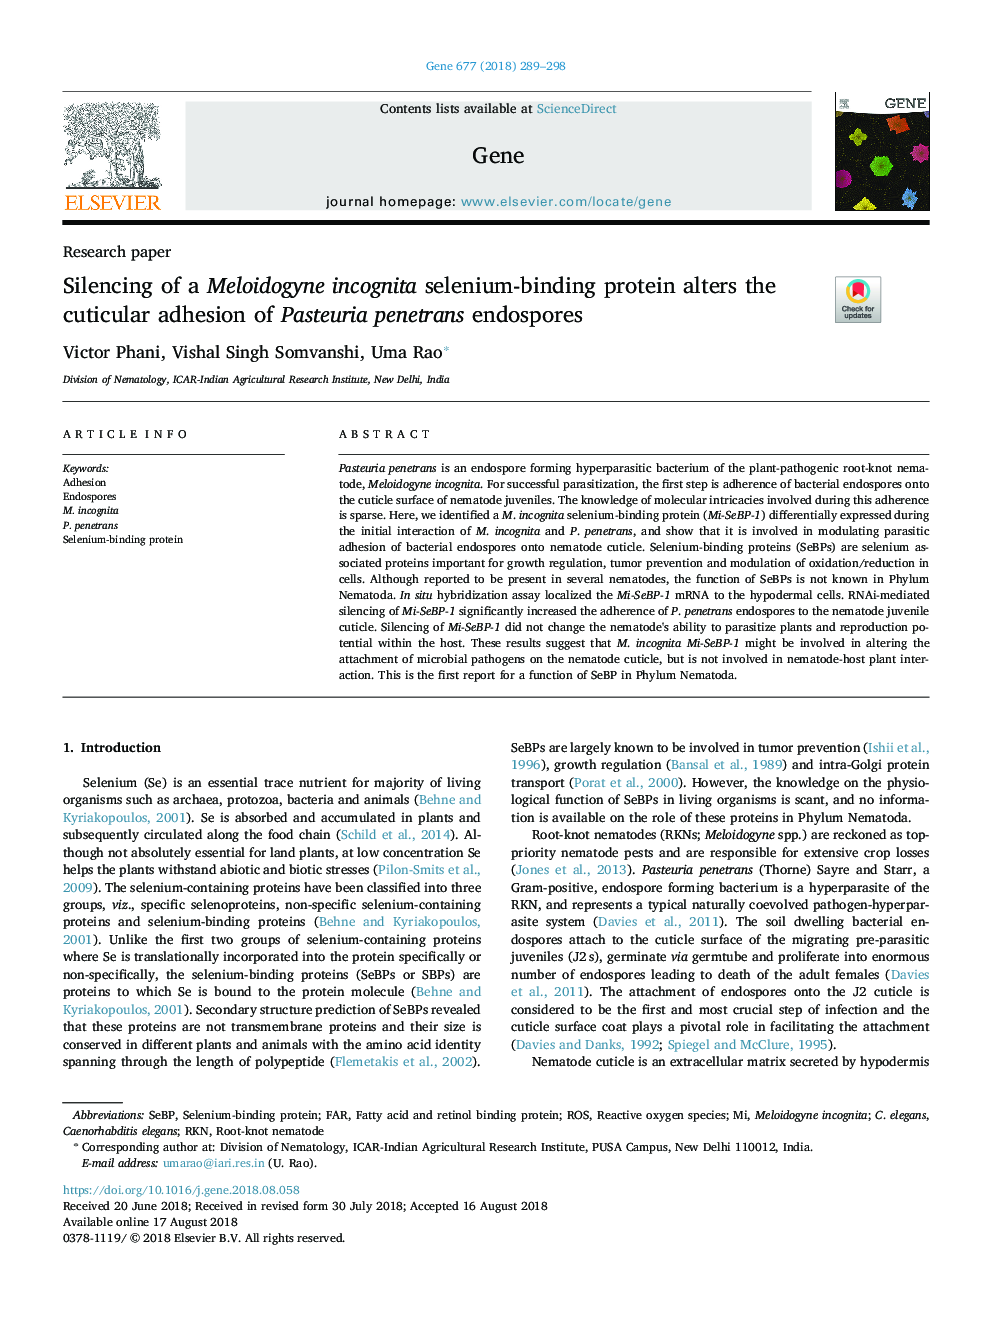 Silencing of a Meloidogyne incognita selenium-binding protein alters the cuticular adhesion of Pasteuria penetrans endospores